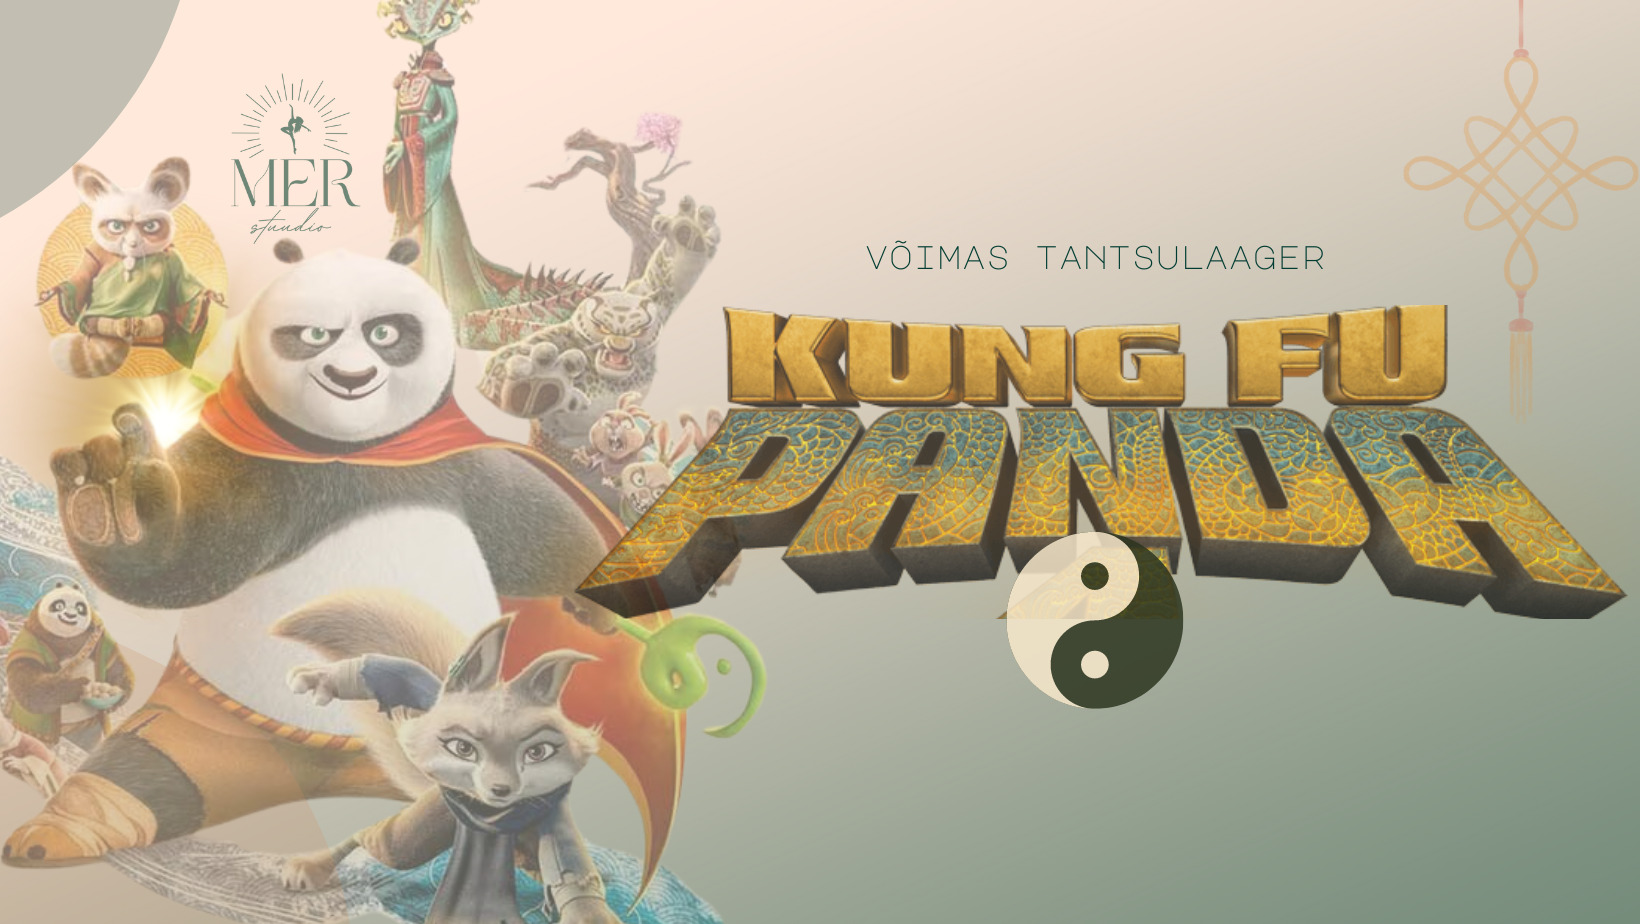 Tantsulaager “Kung fu Panda”